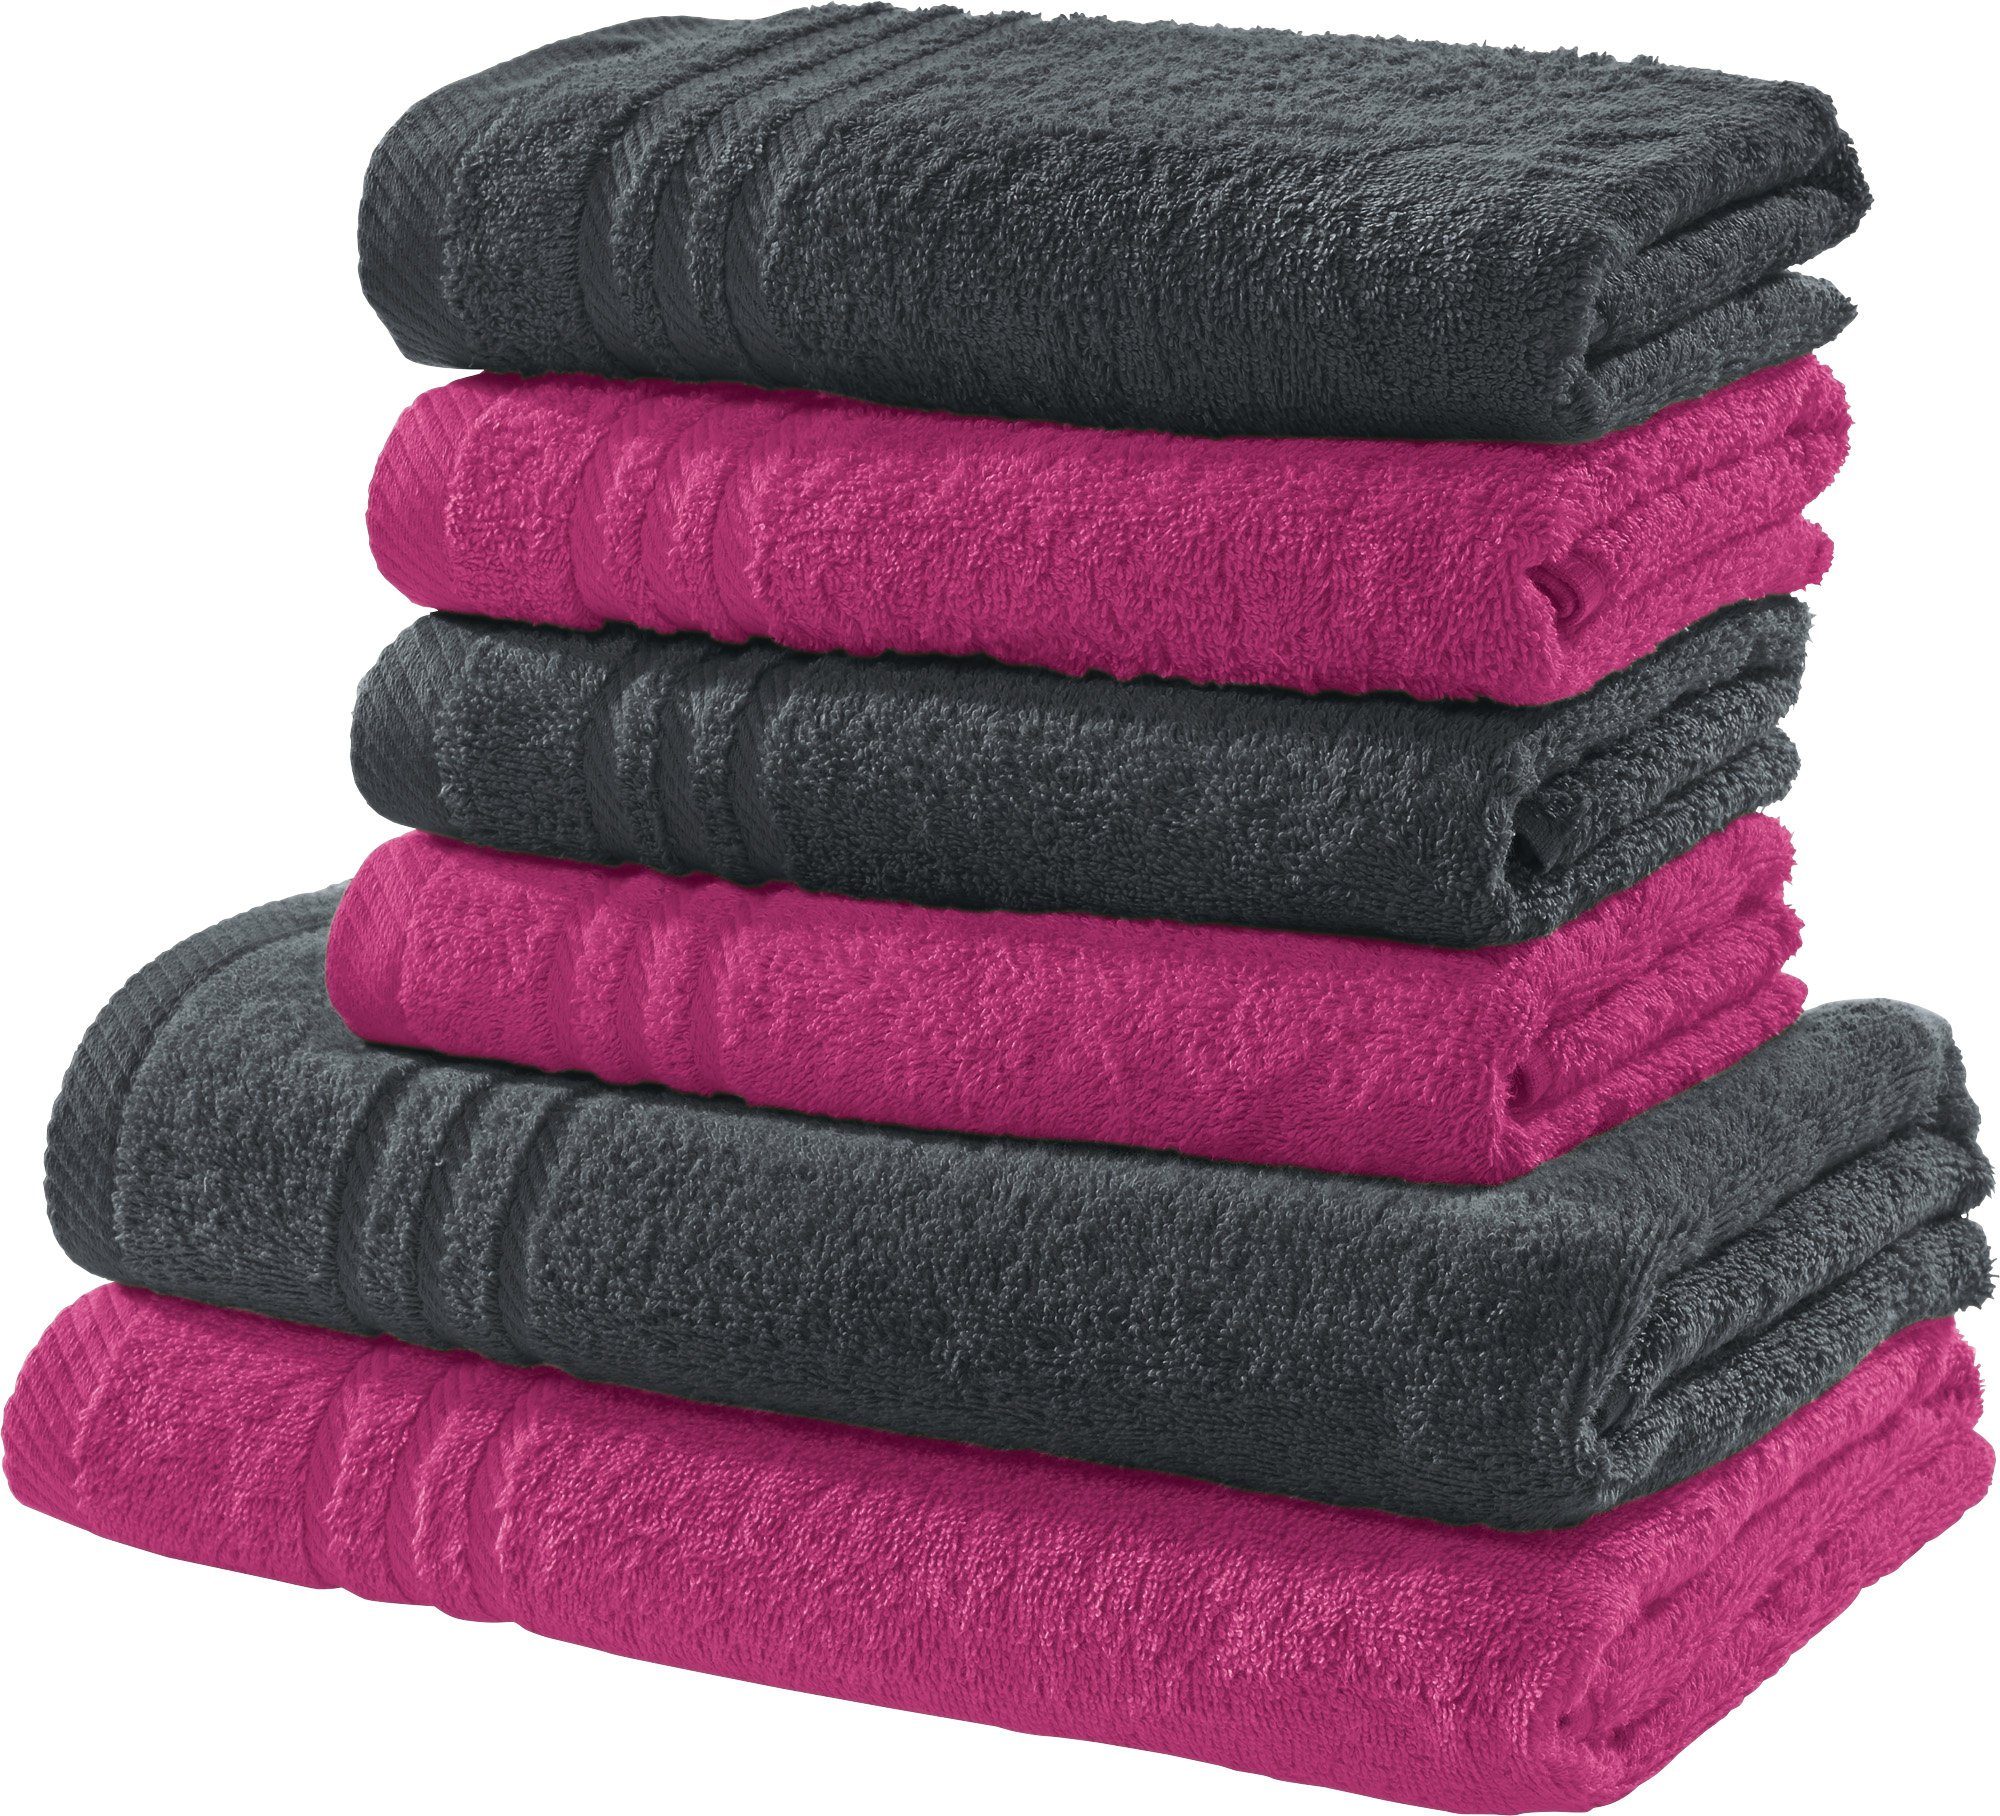 Ausgezeichnete Qualität Rosa Handtuch-Sets online kaufen | OTTO